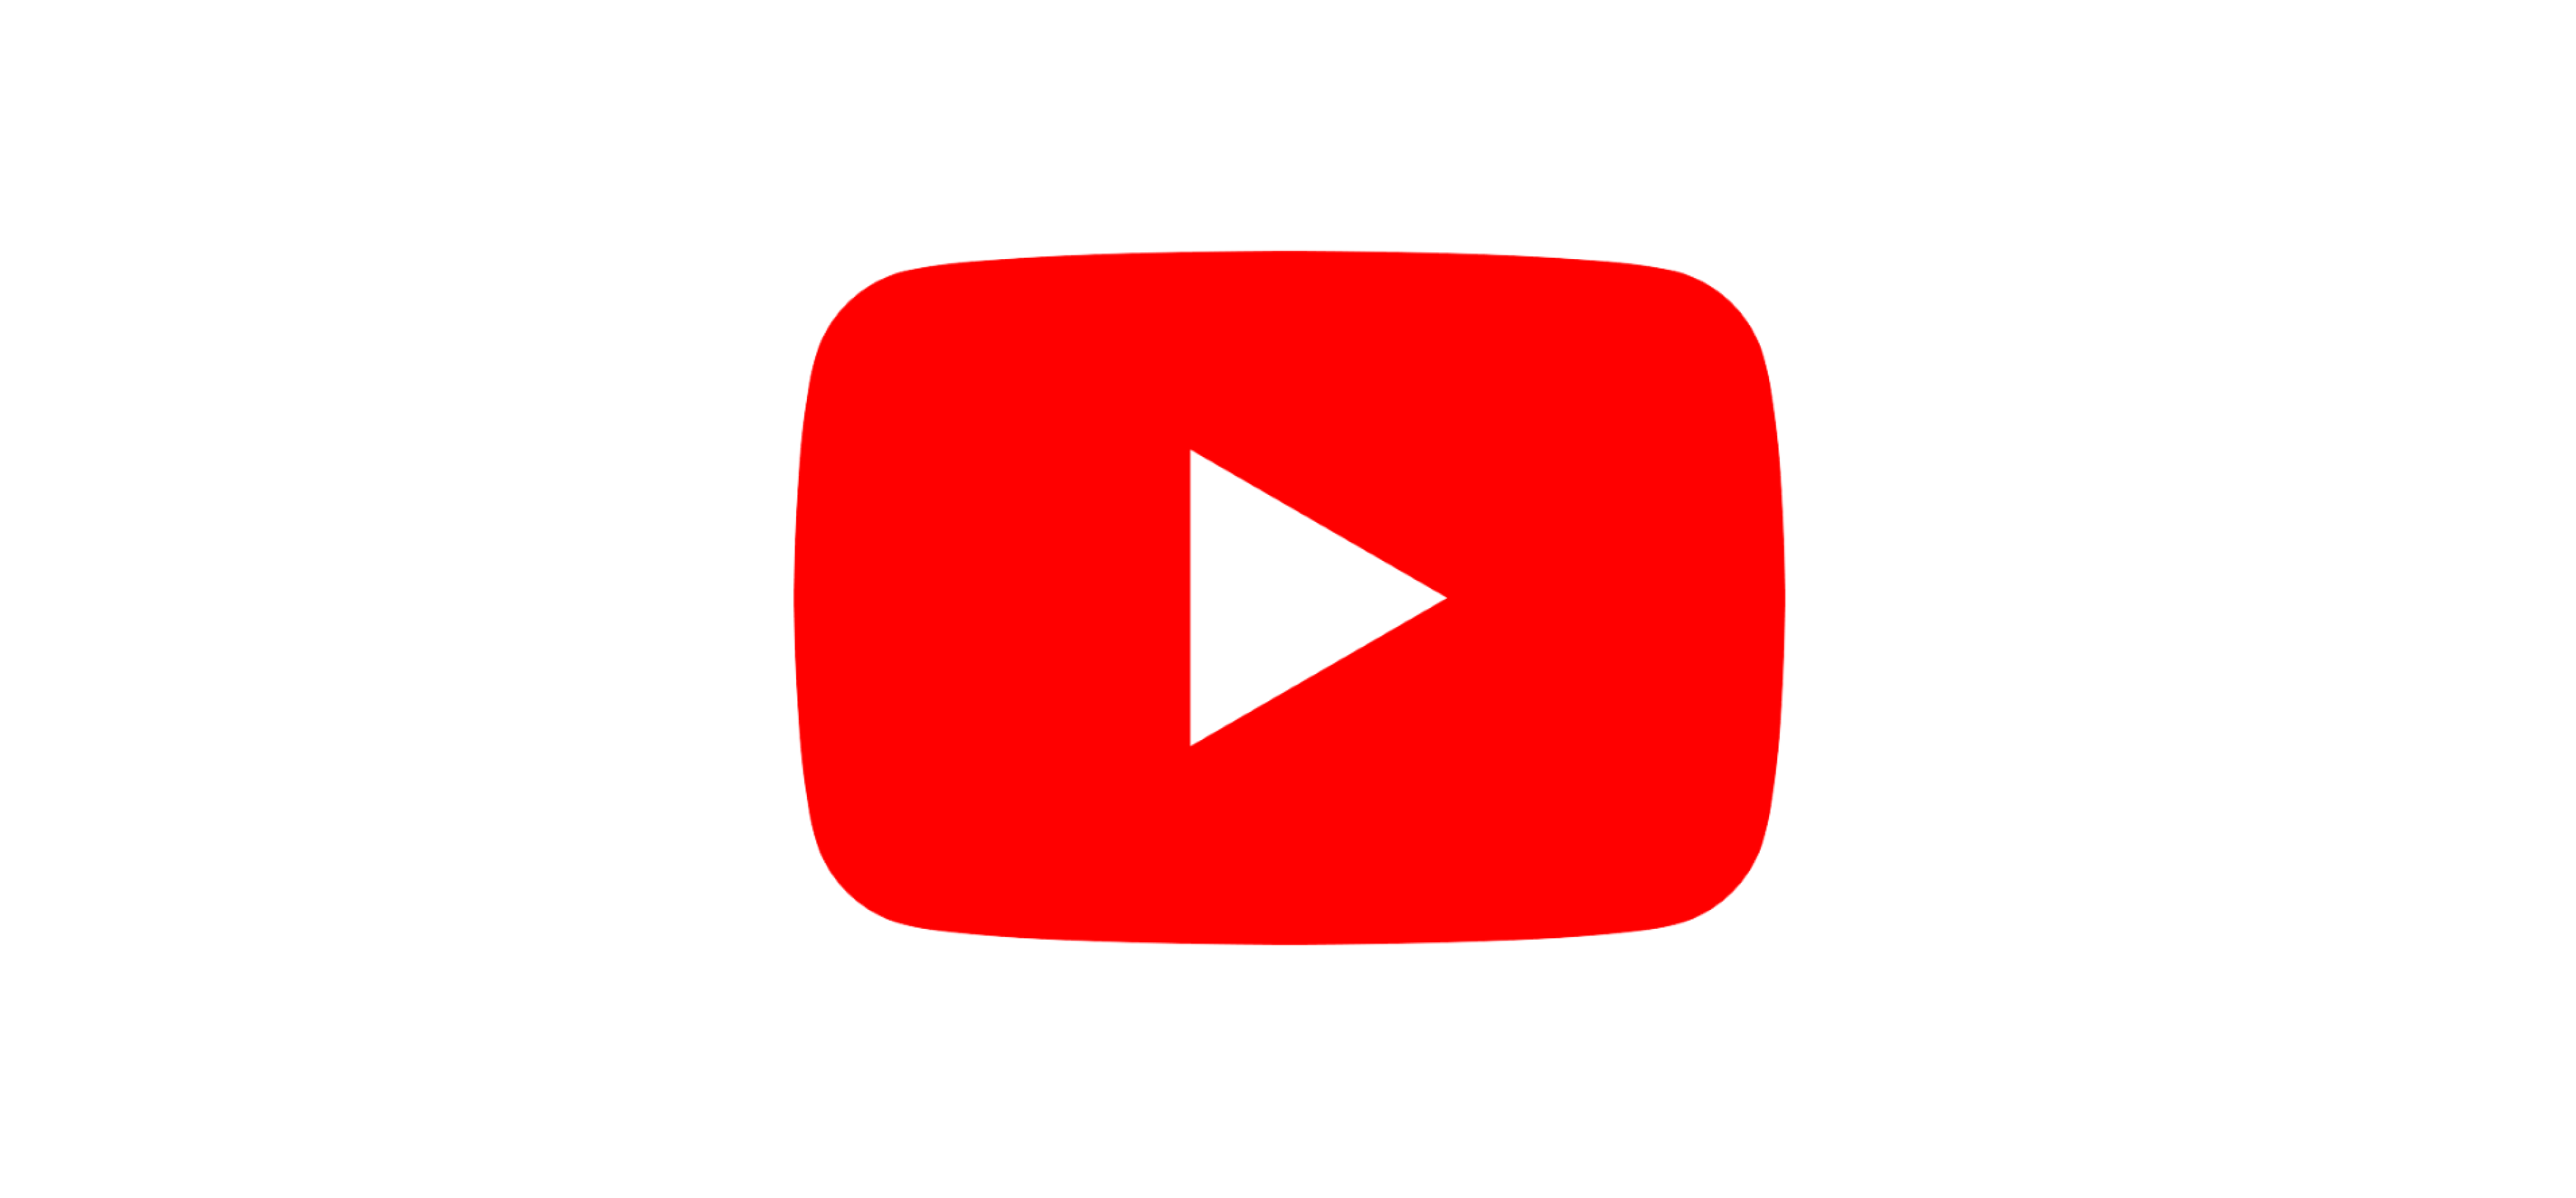 Youtube ads logo